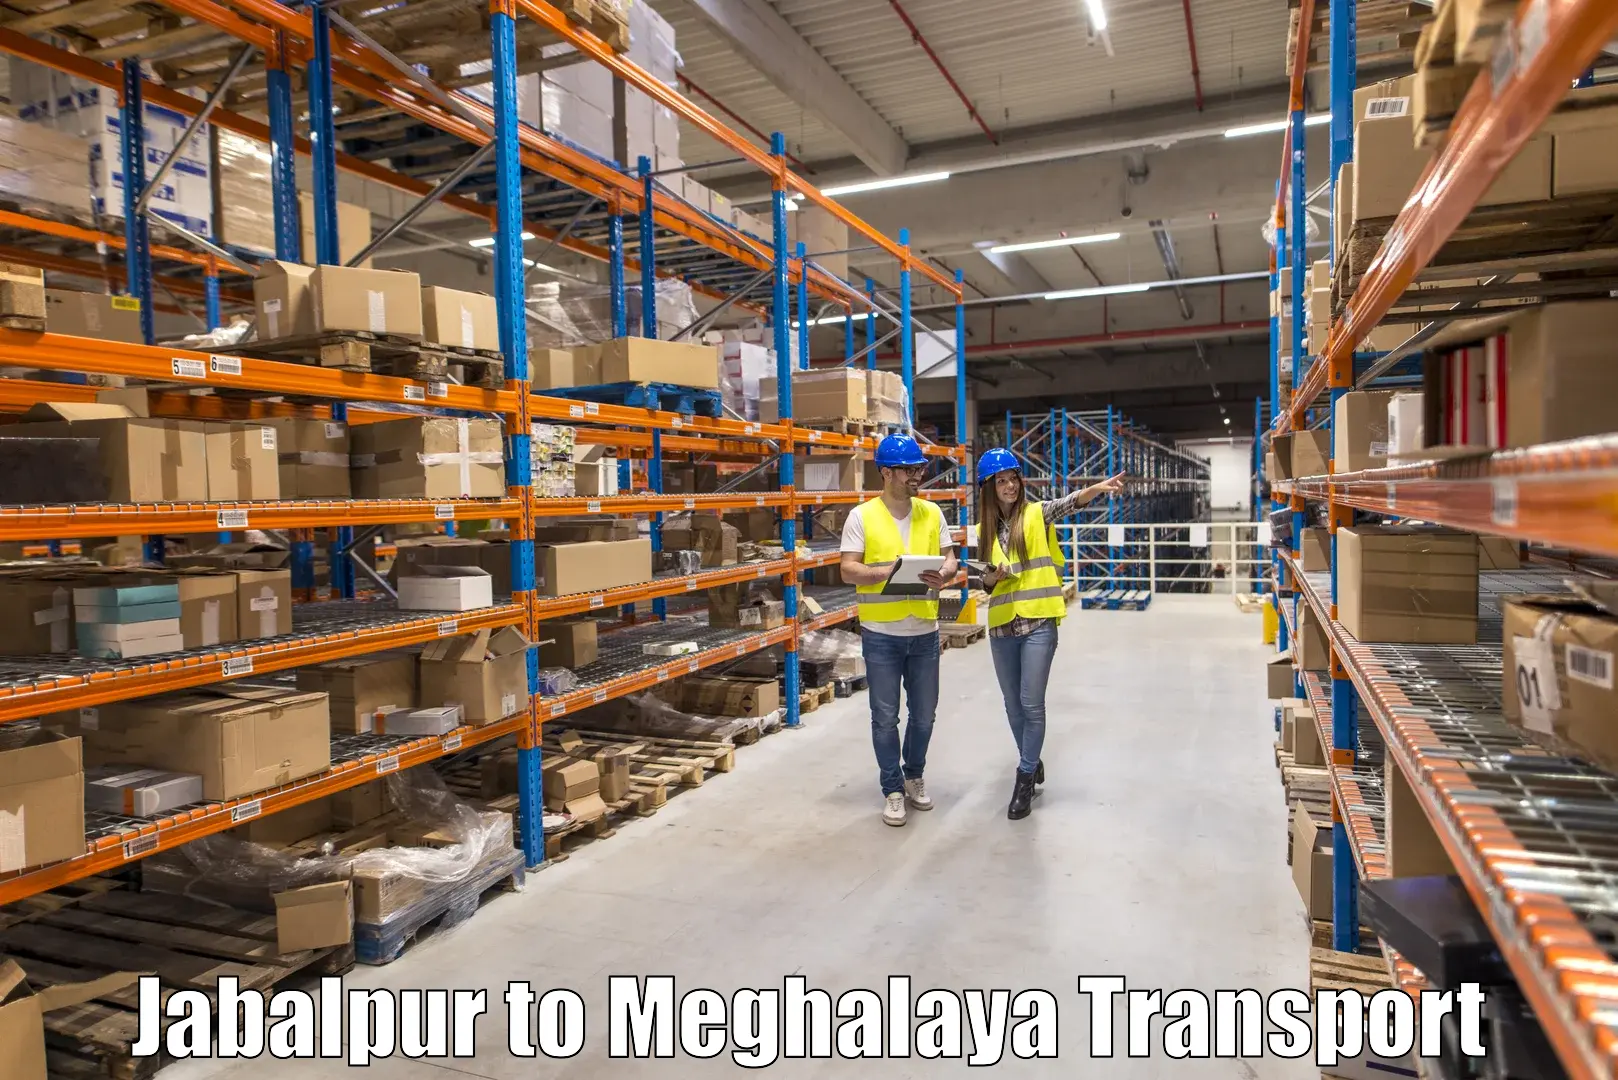 Logistics transportation services Jabalpur to Dkhiah West